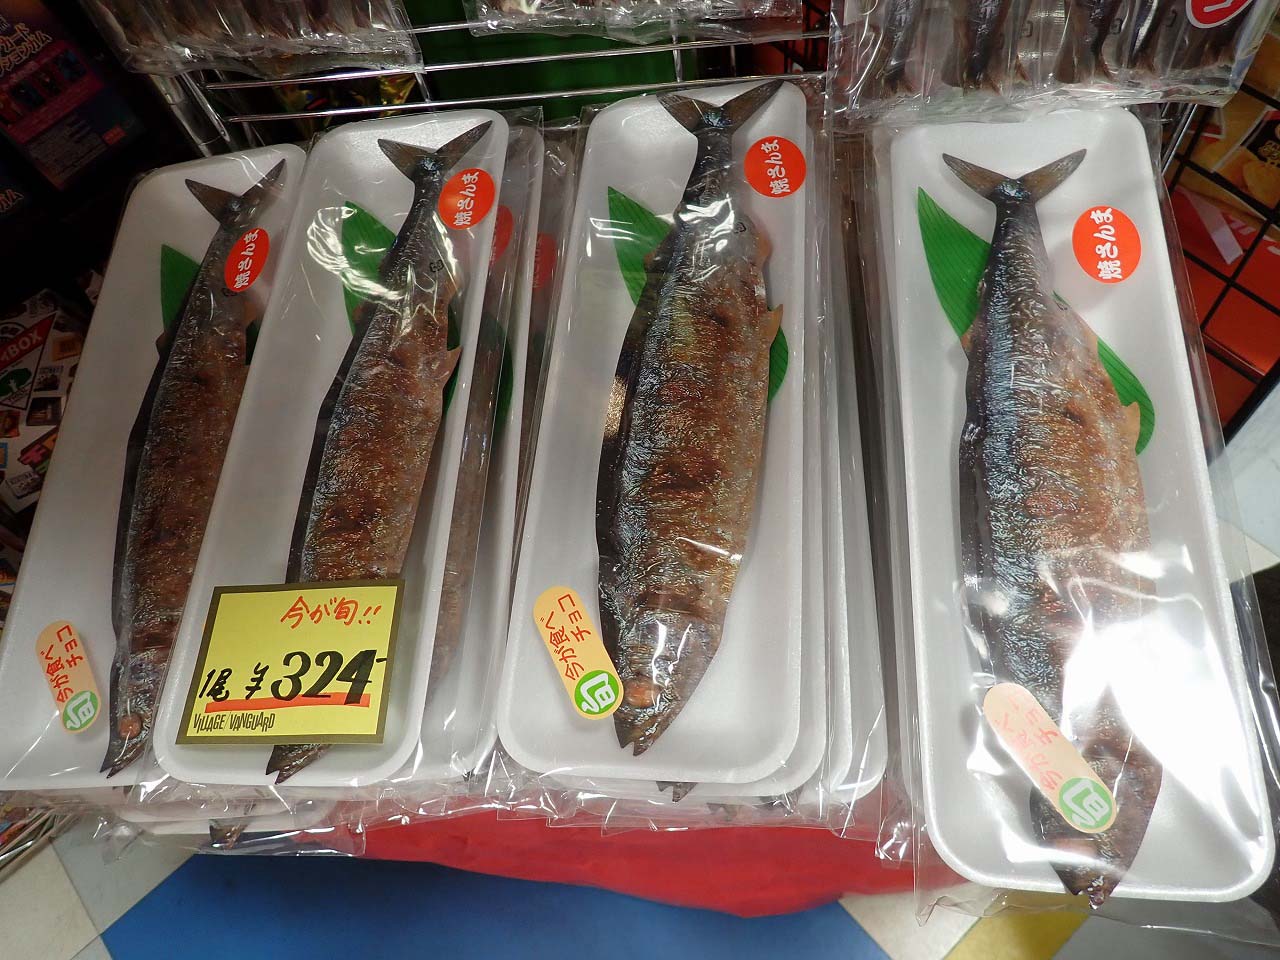 ヴィレヴァンで販売している焼き魚のようなチョコ